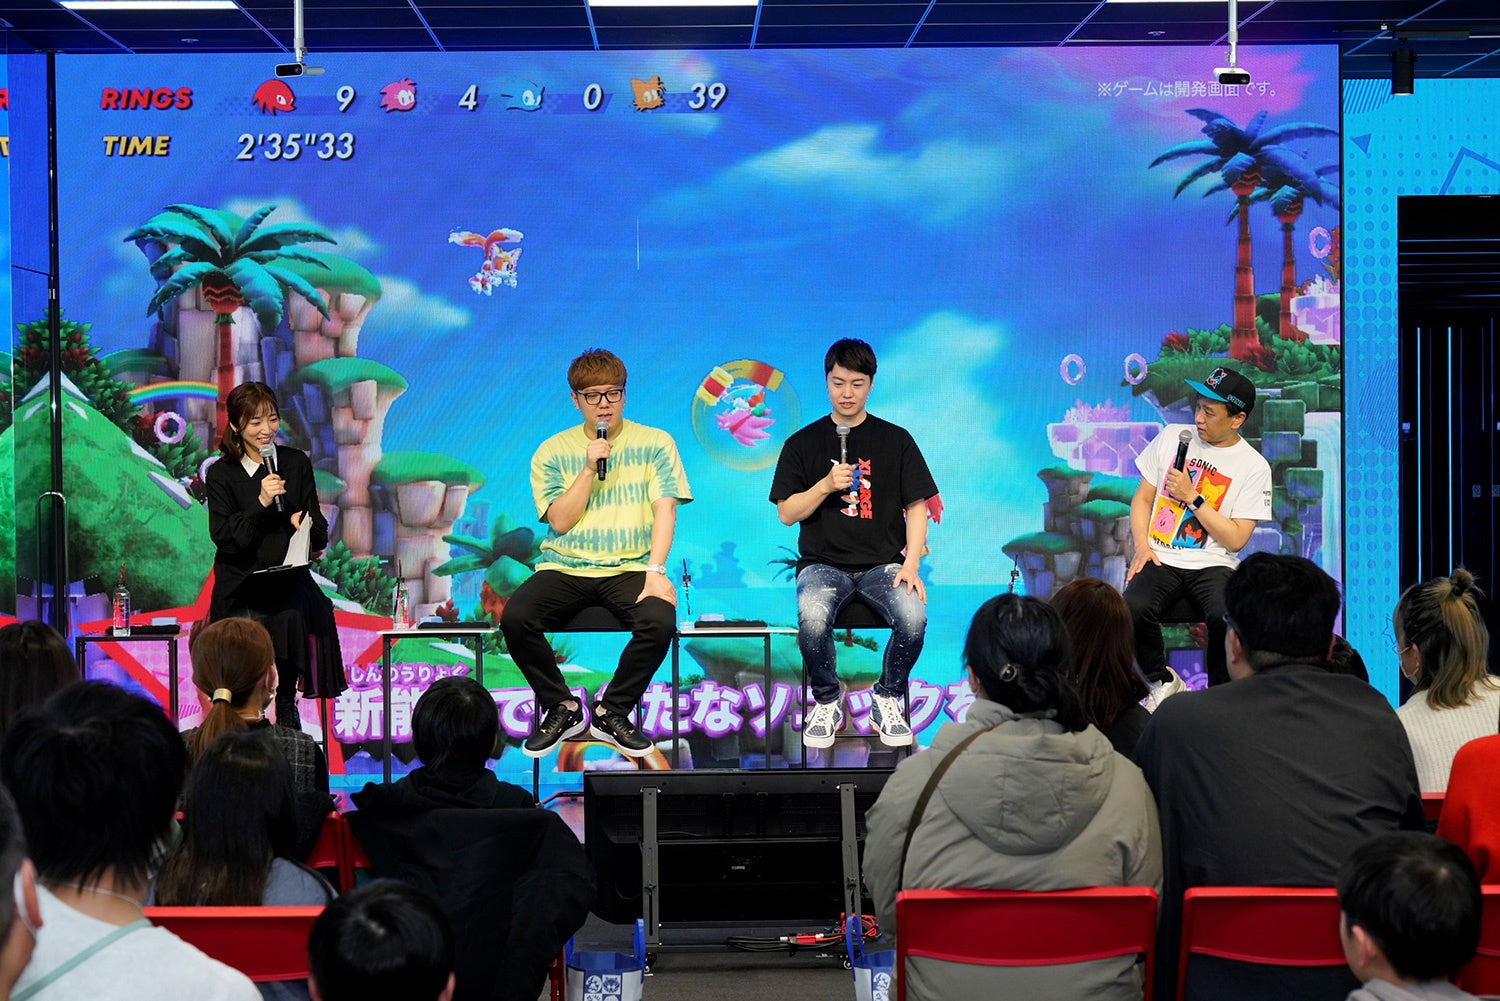 大人気動画クリエイターのHIKAKINさん、Masuoさんも登場した『ソニックスーパースターズ』シークレットイベントを完全レポート！